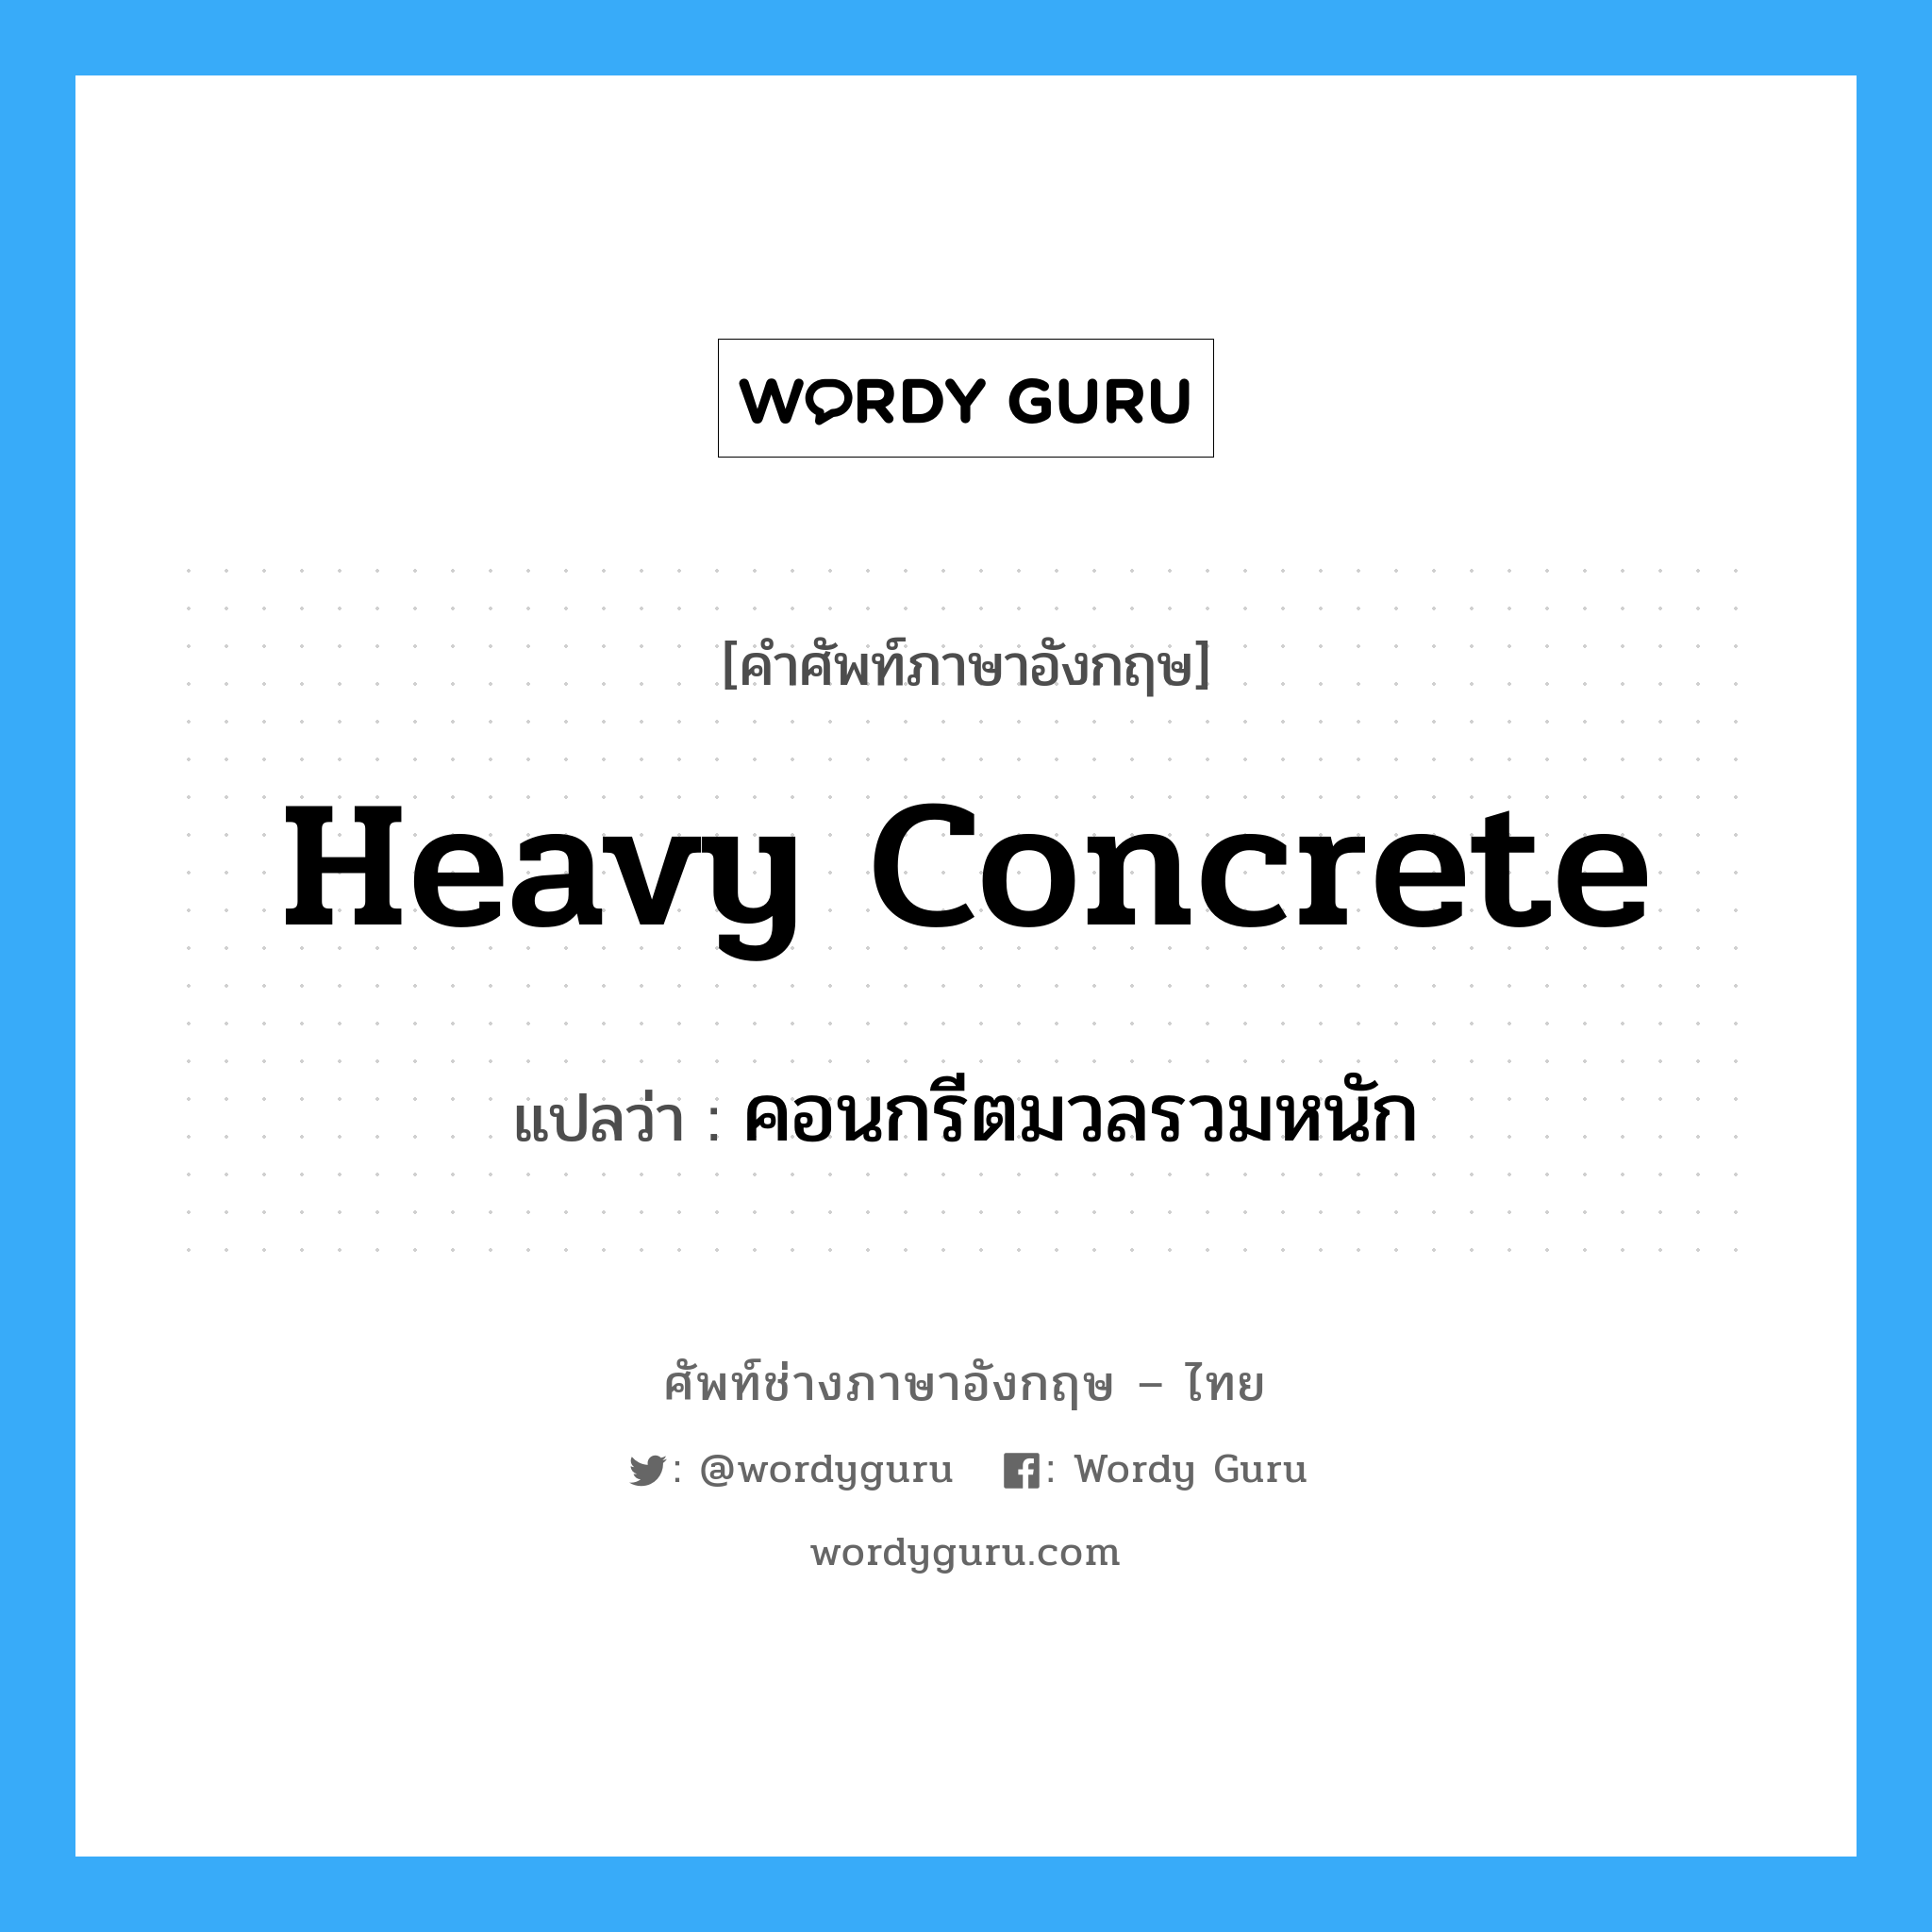 heavy concrete แปลว่า?, คำศัพท์ช่างภาษาอังกฤษ - ไทย heavy concrete คำศัพท์ภาษาอังกฤษ heavy concrete แปลว่า คอนกรีตมวลรวมหนัก